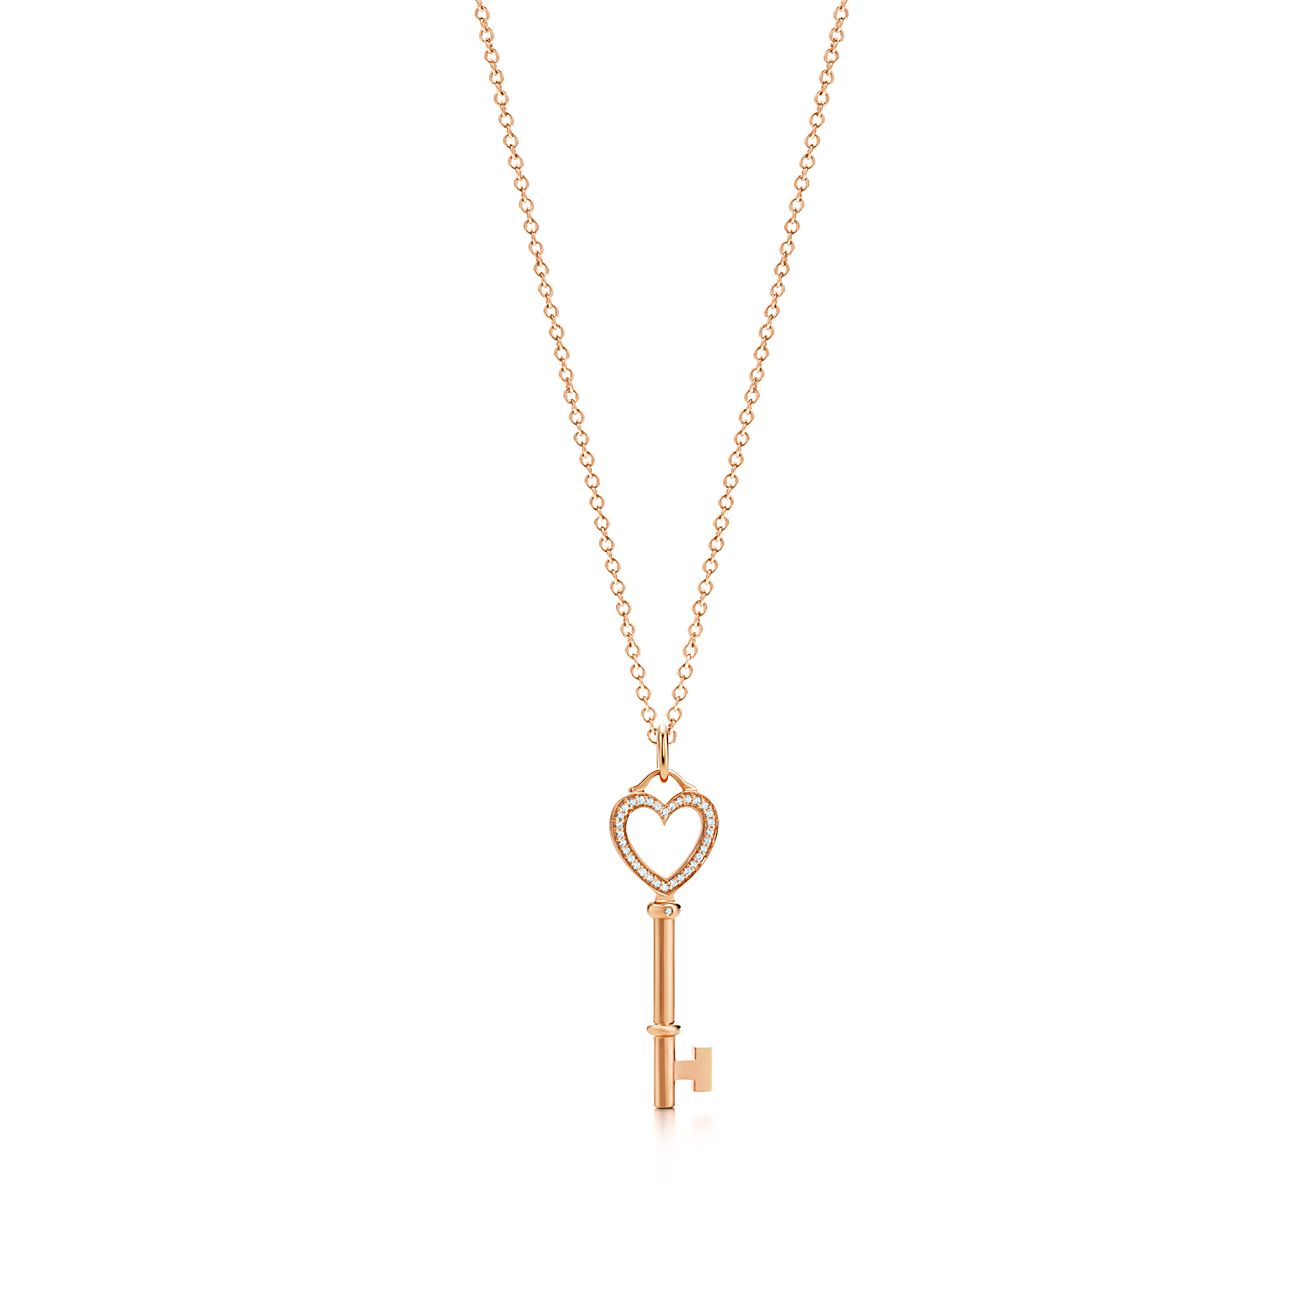 Tiffany Keys diamond heart key charm in 